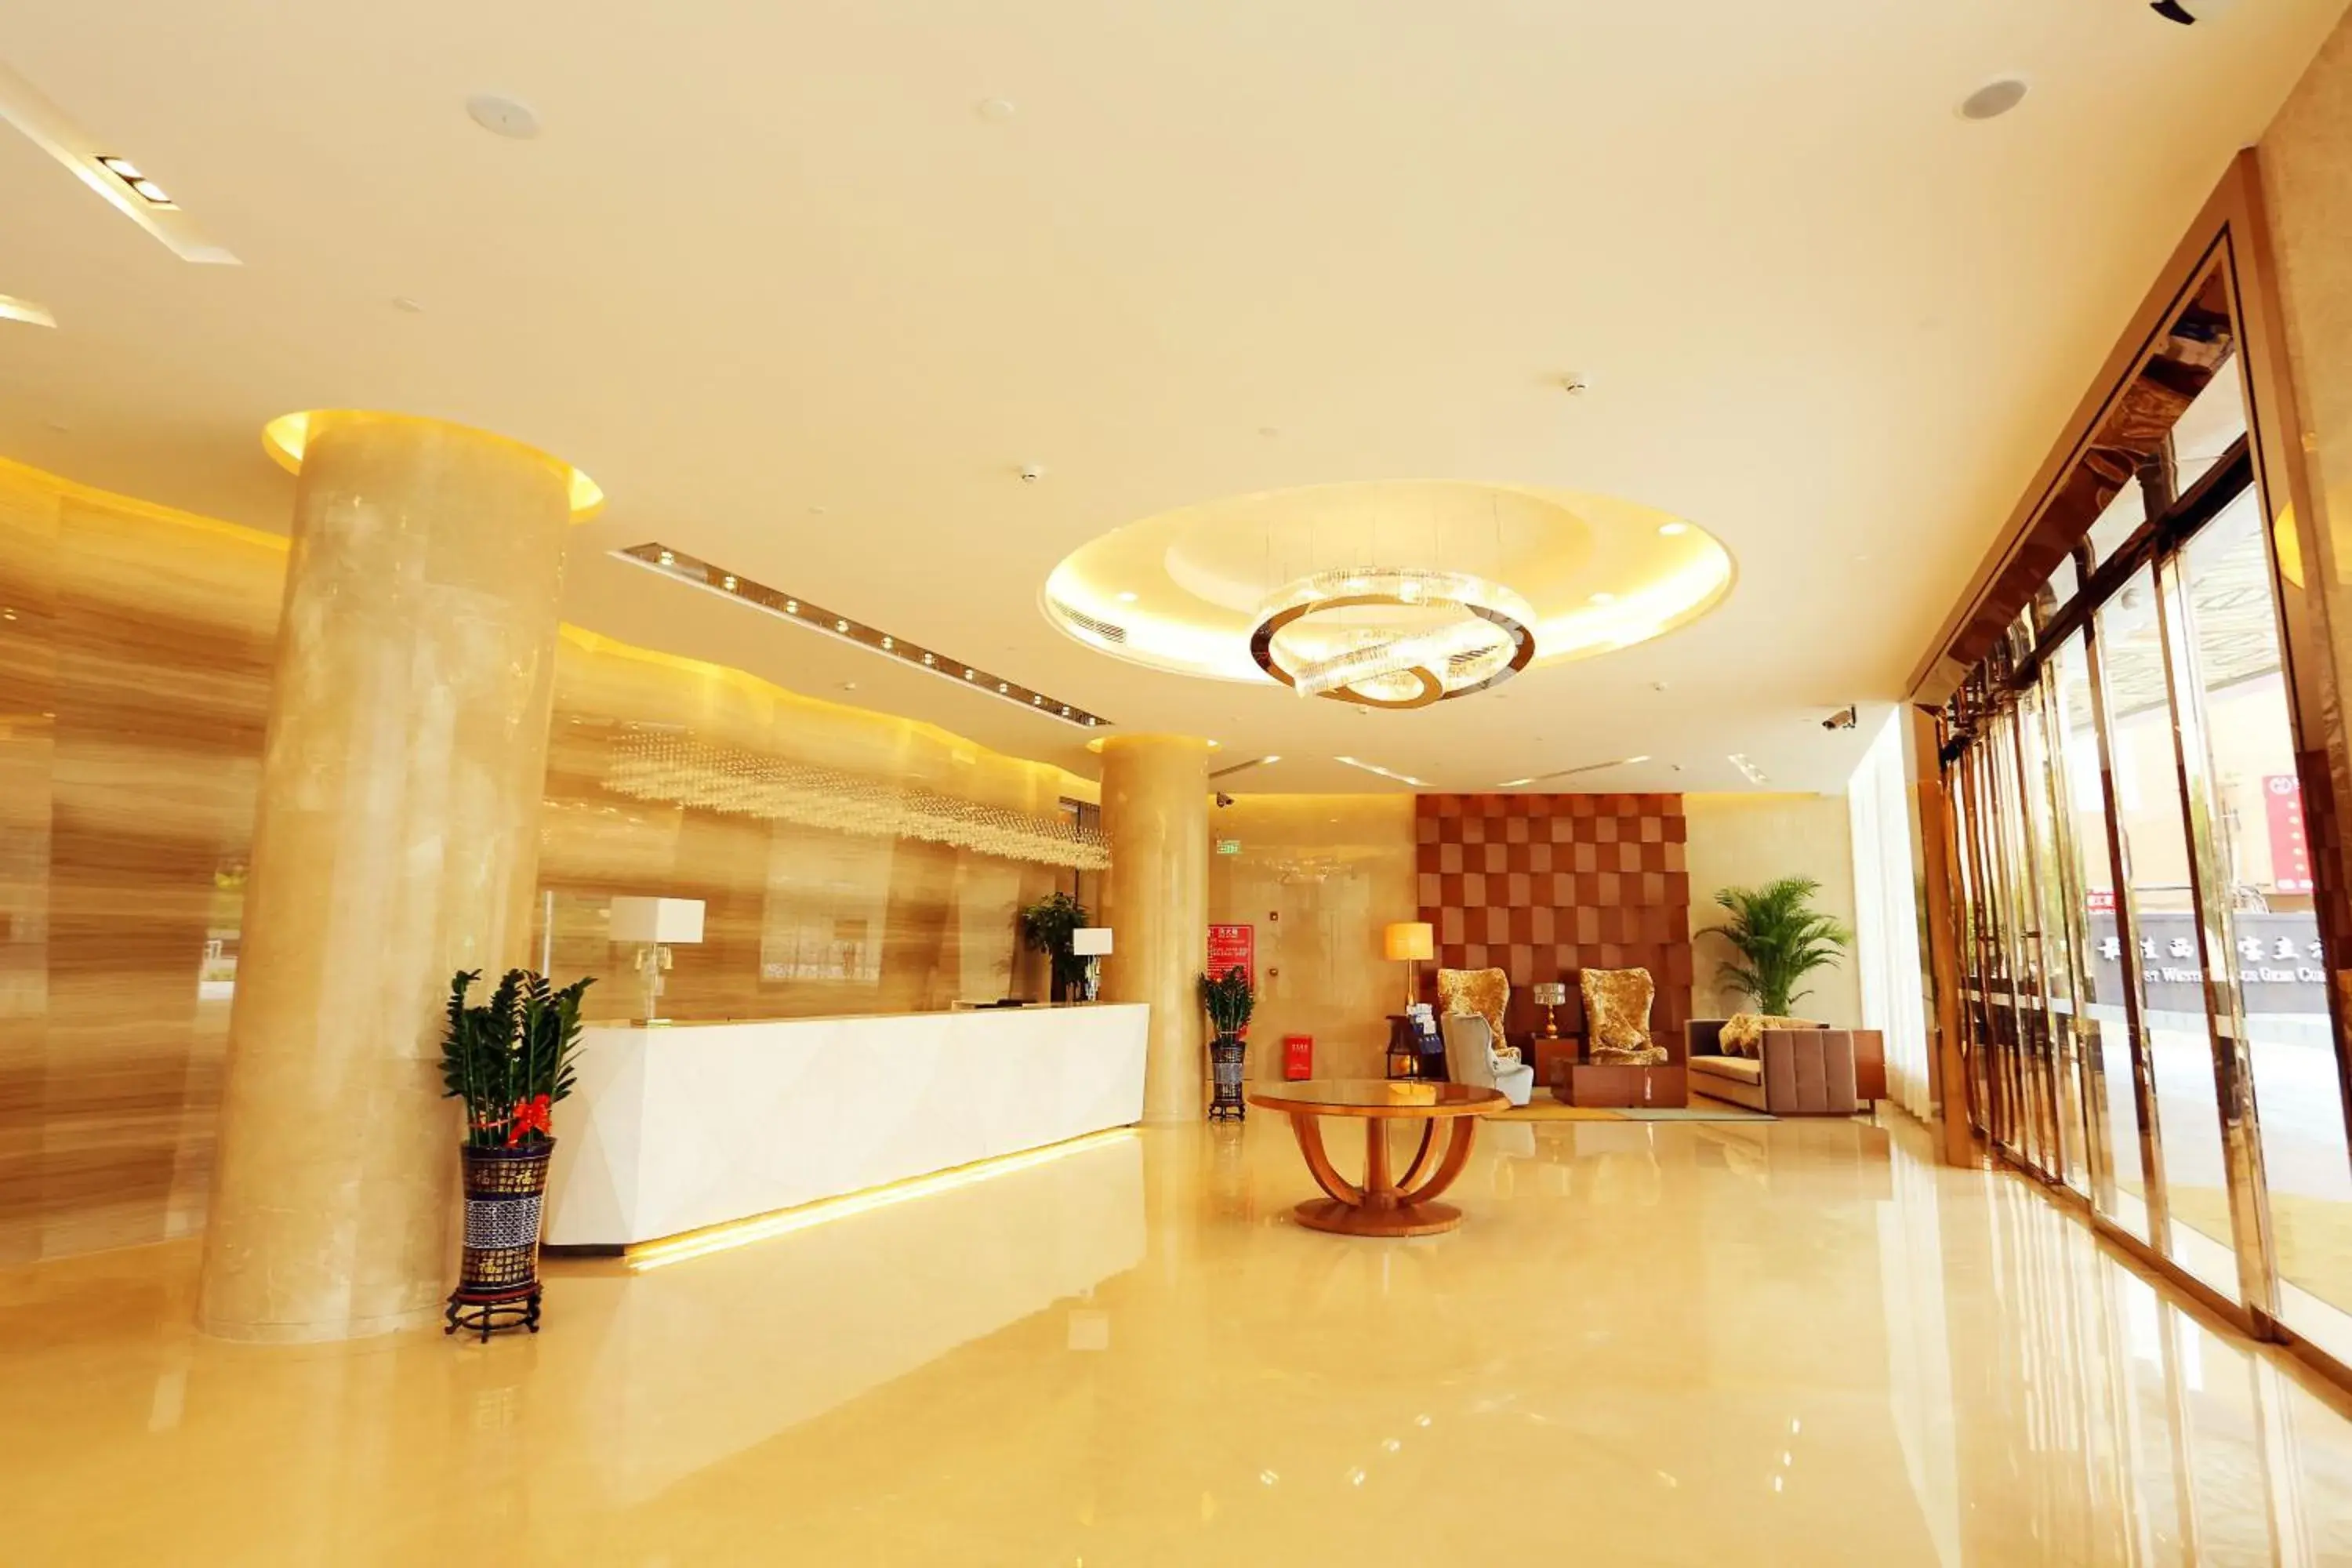 Lobby or reception, Lobby/Reception in Shenzhen Baoan PLUS Gems Cube Hotel                                                             